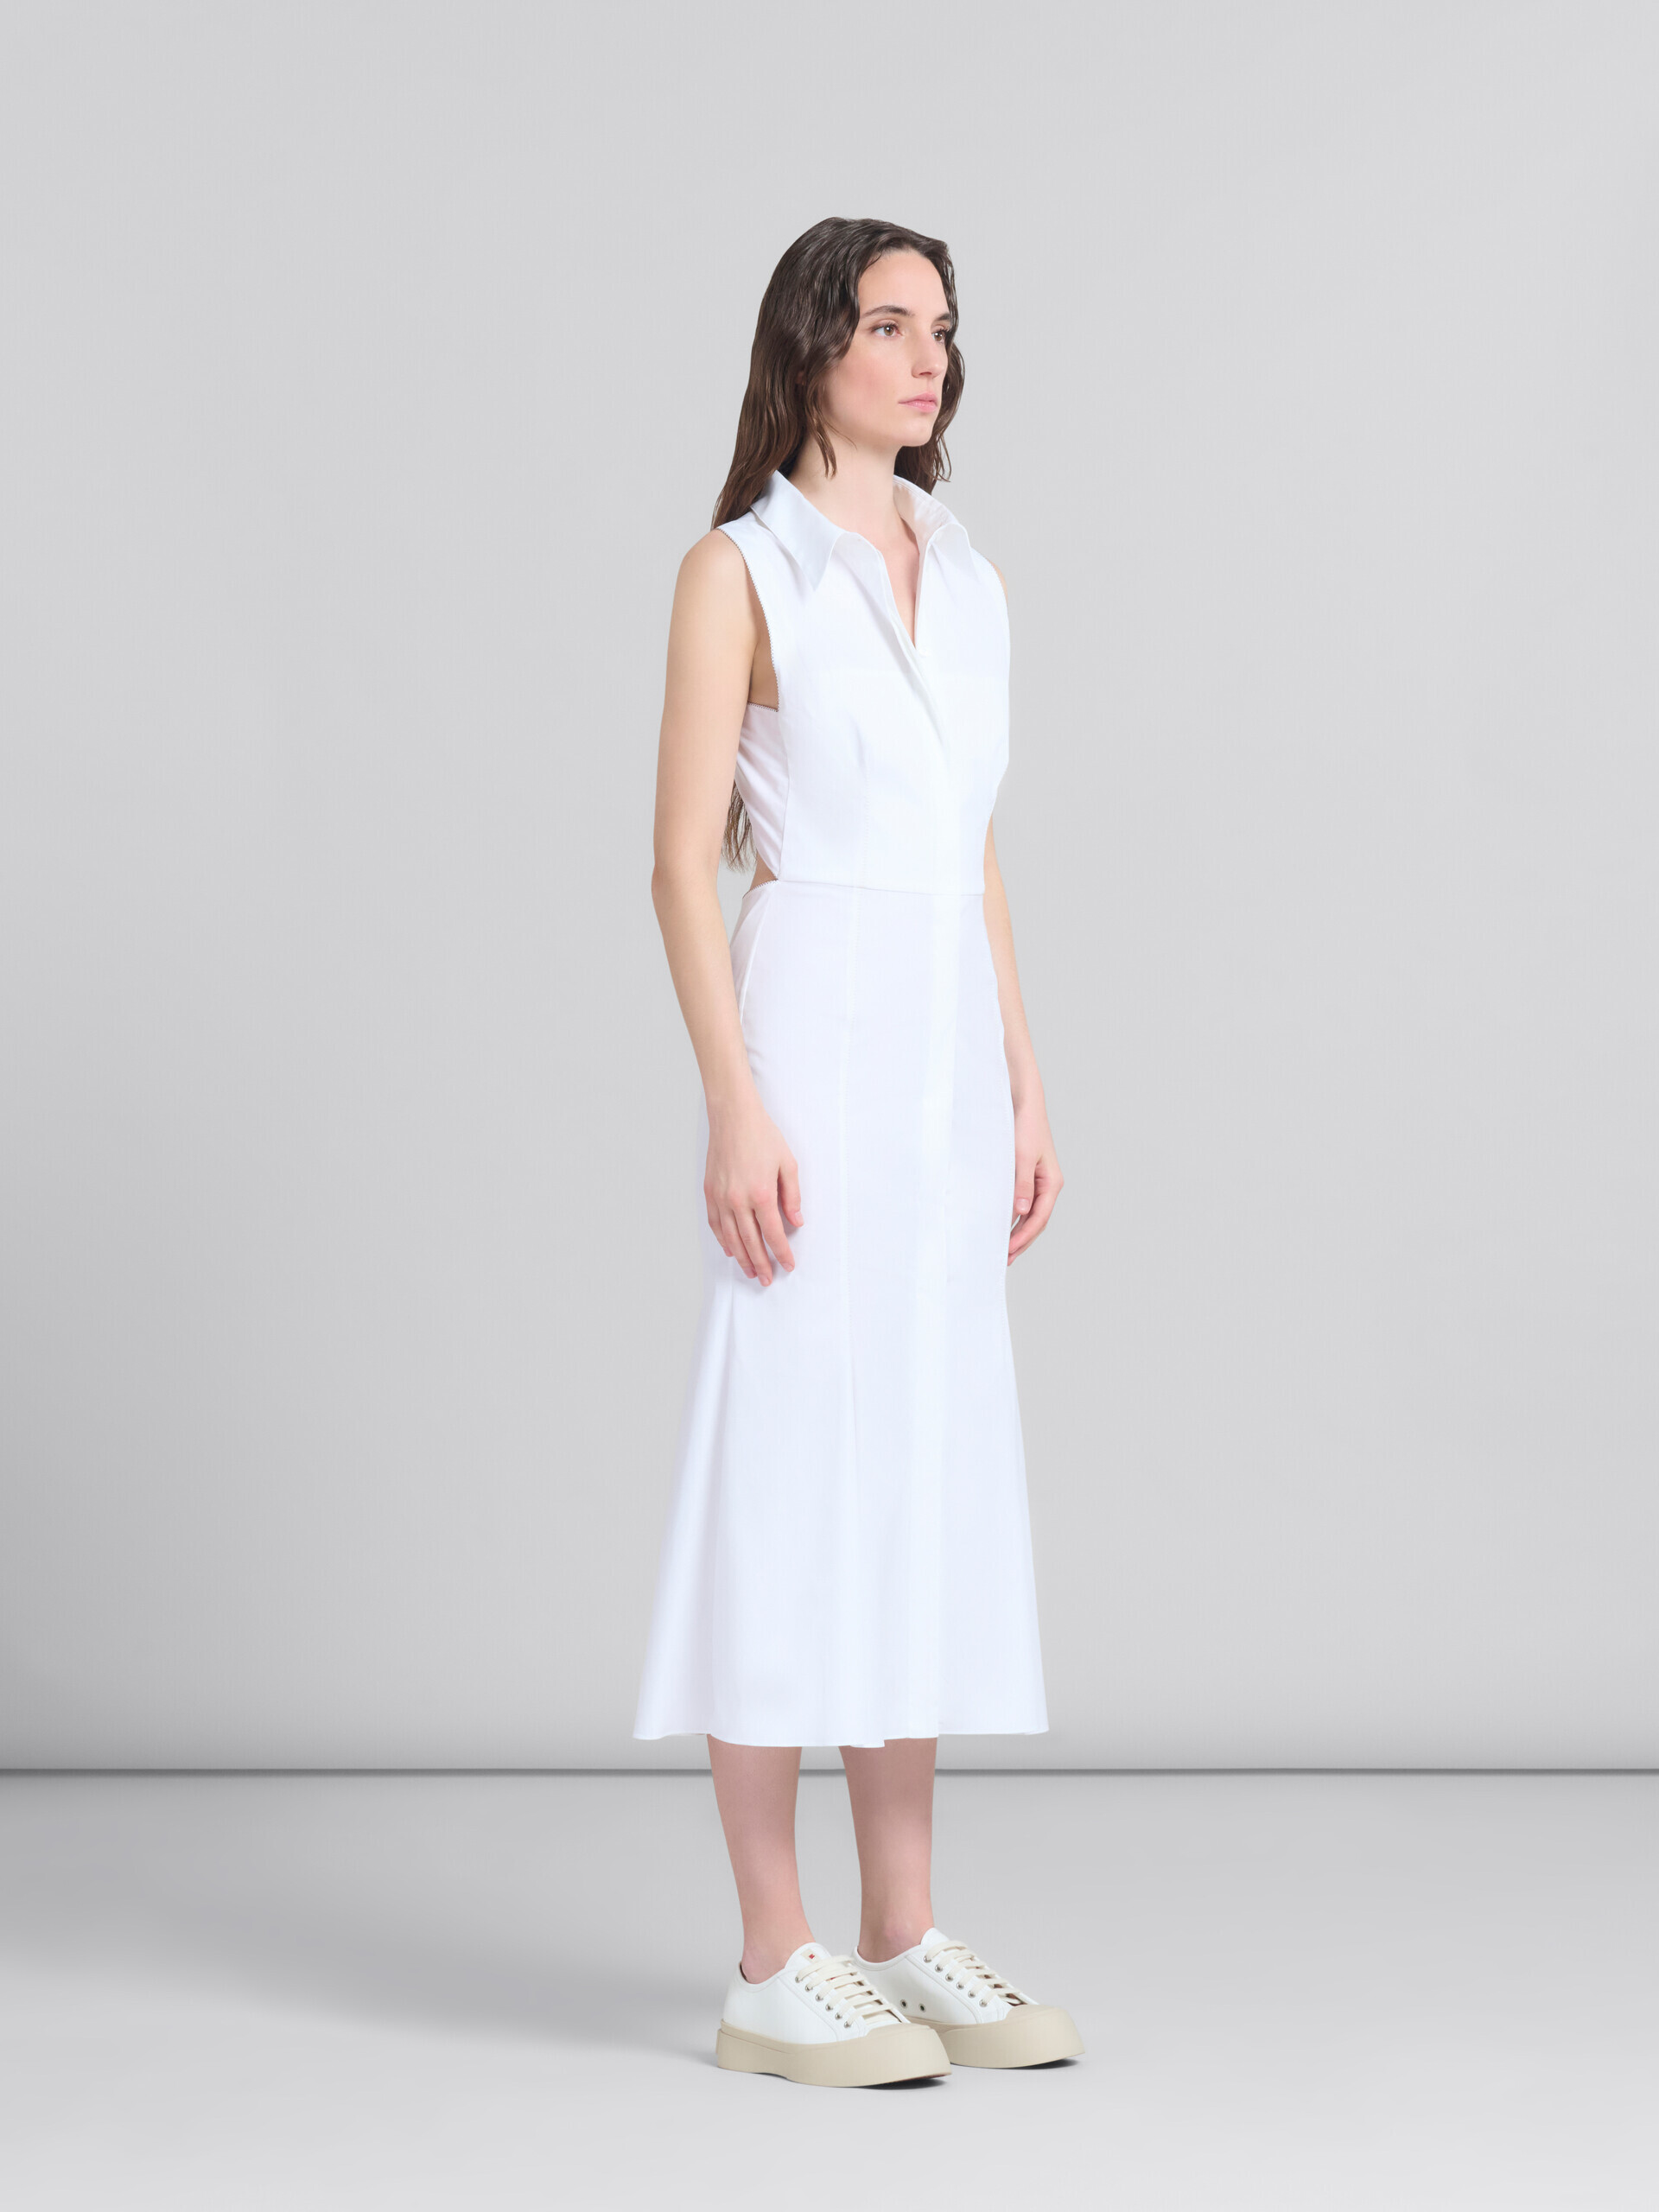 Vestido de corte sirena de algodón orgánico blanco - Vestidos - Image 6